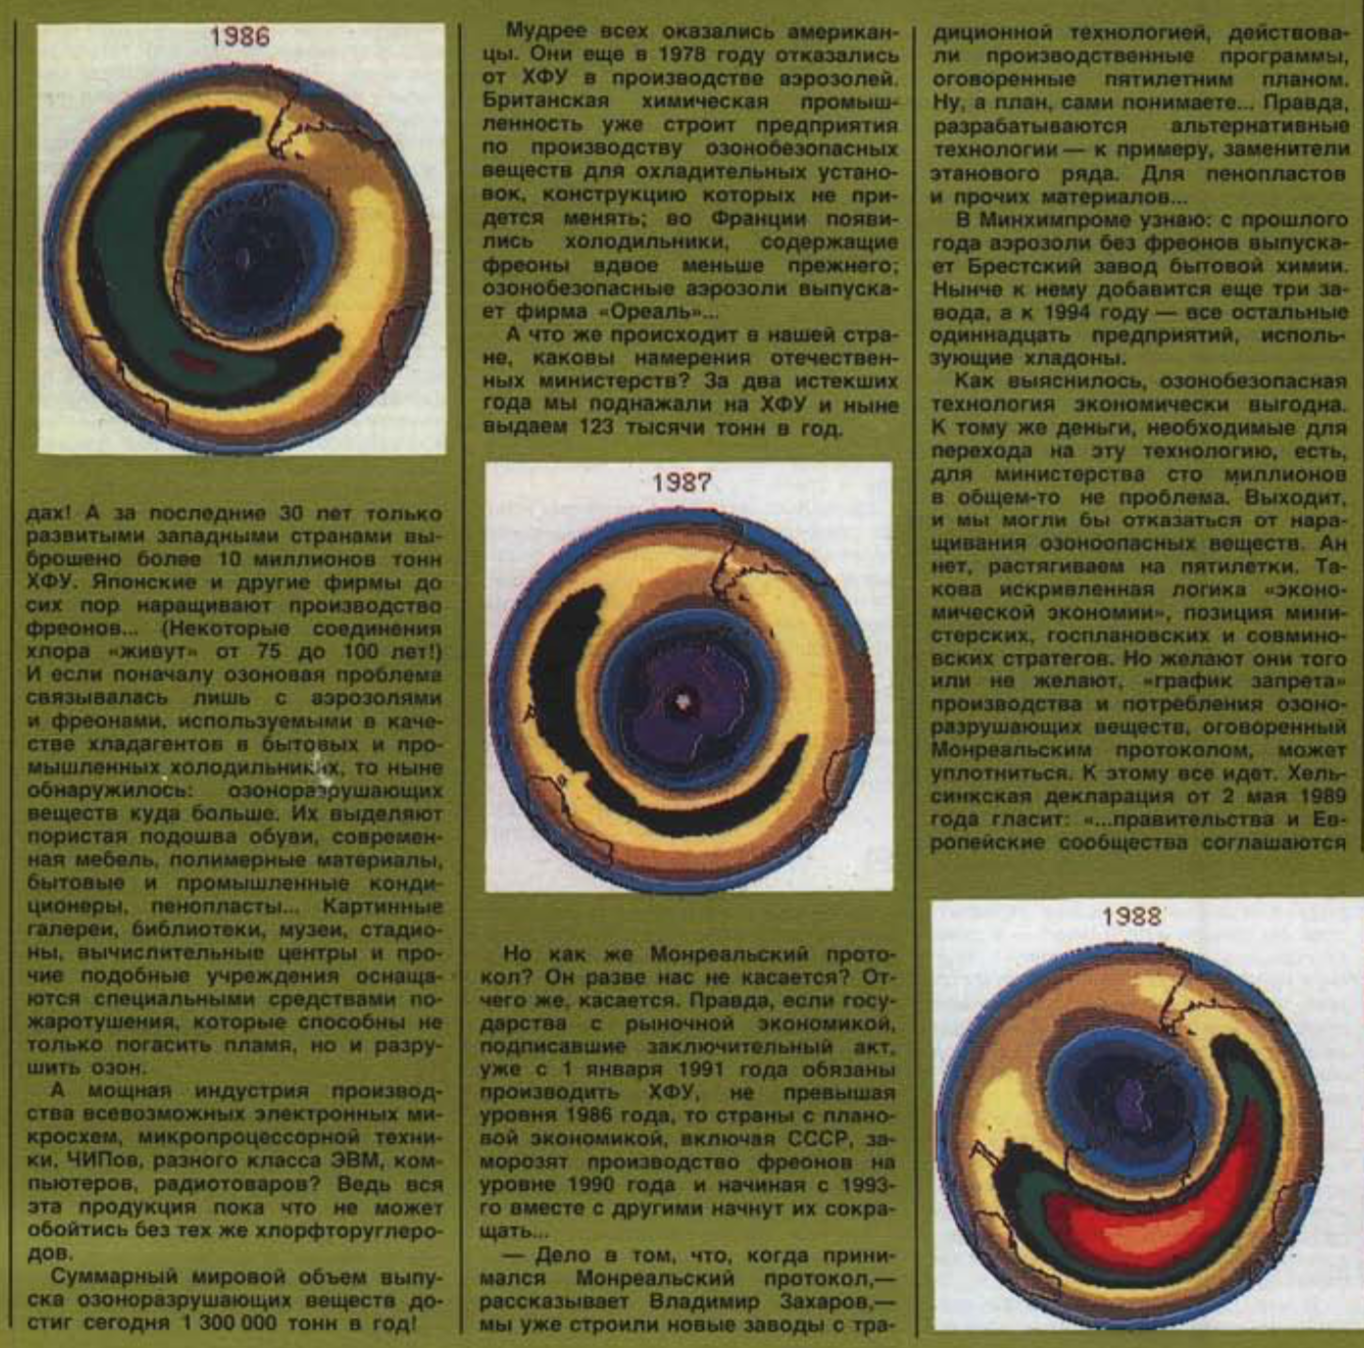 Фотографии озоновой дыры в журнале “Смена”, № 14, июль 1989 года